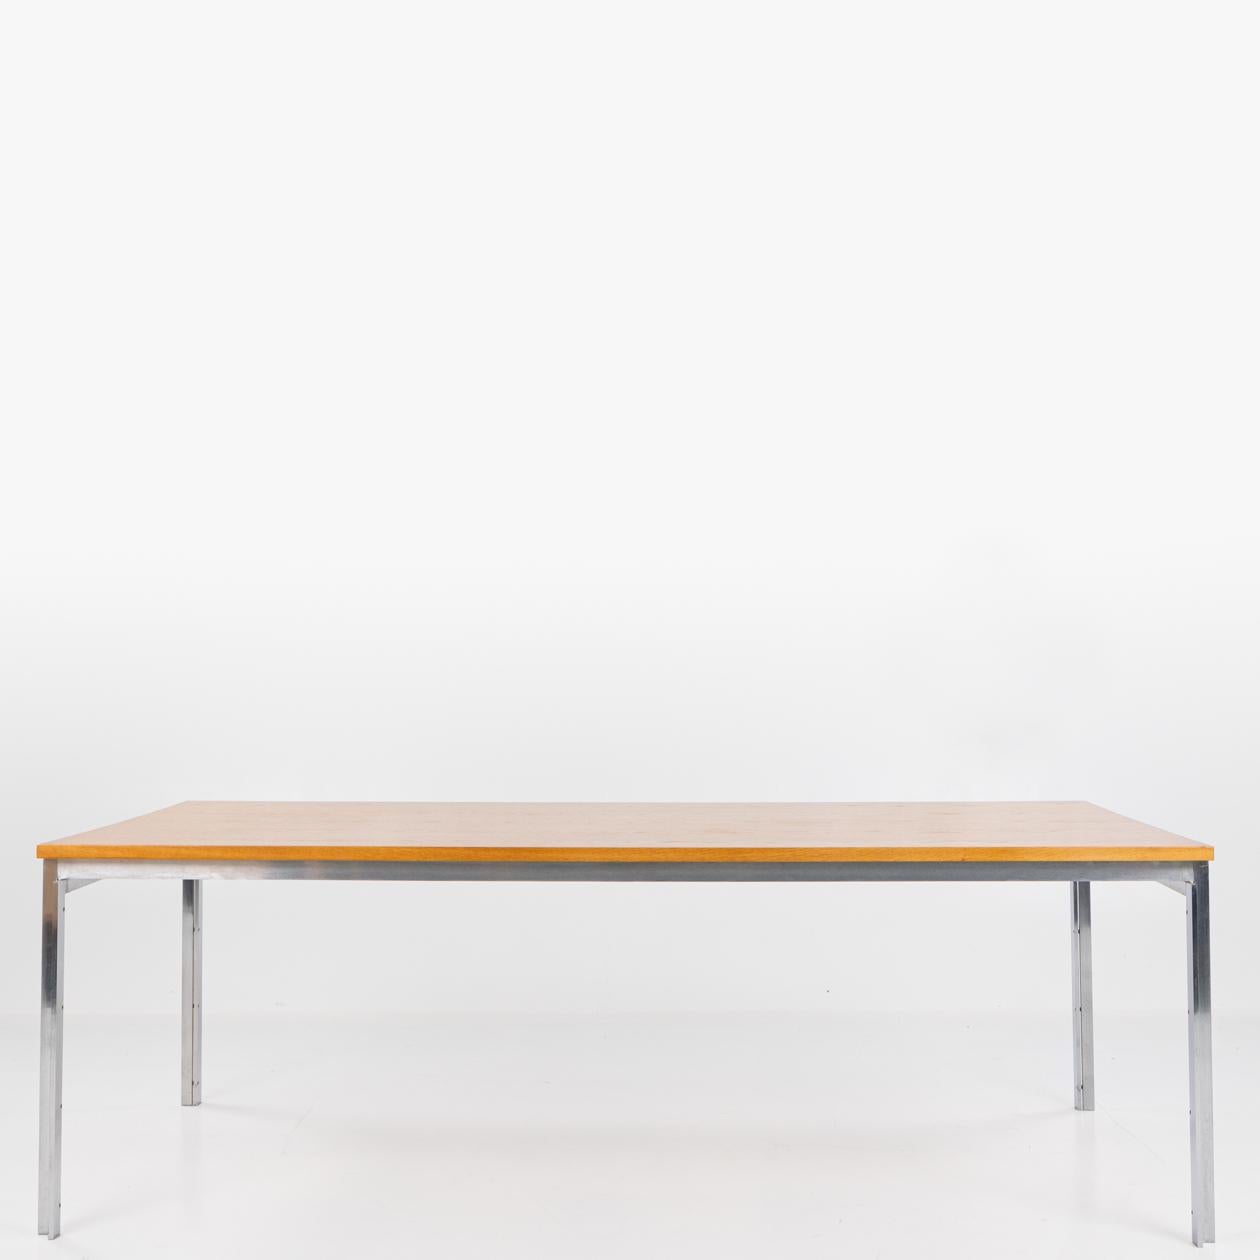 PK 55 - Bureau/table à manger avec plateau en frêne et structure en acier. Marqué par le fabricant. Conçu par Poul Kjærholm, réalisé par E. Kold Christensen.